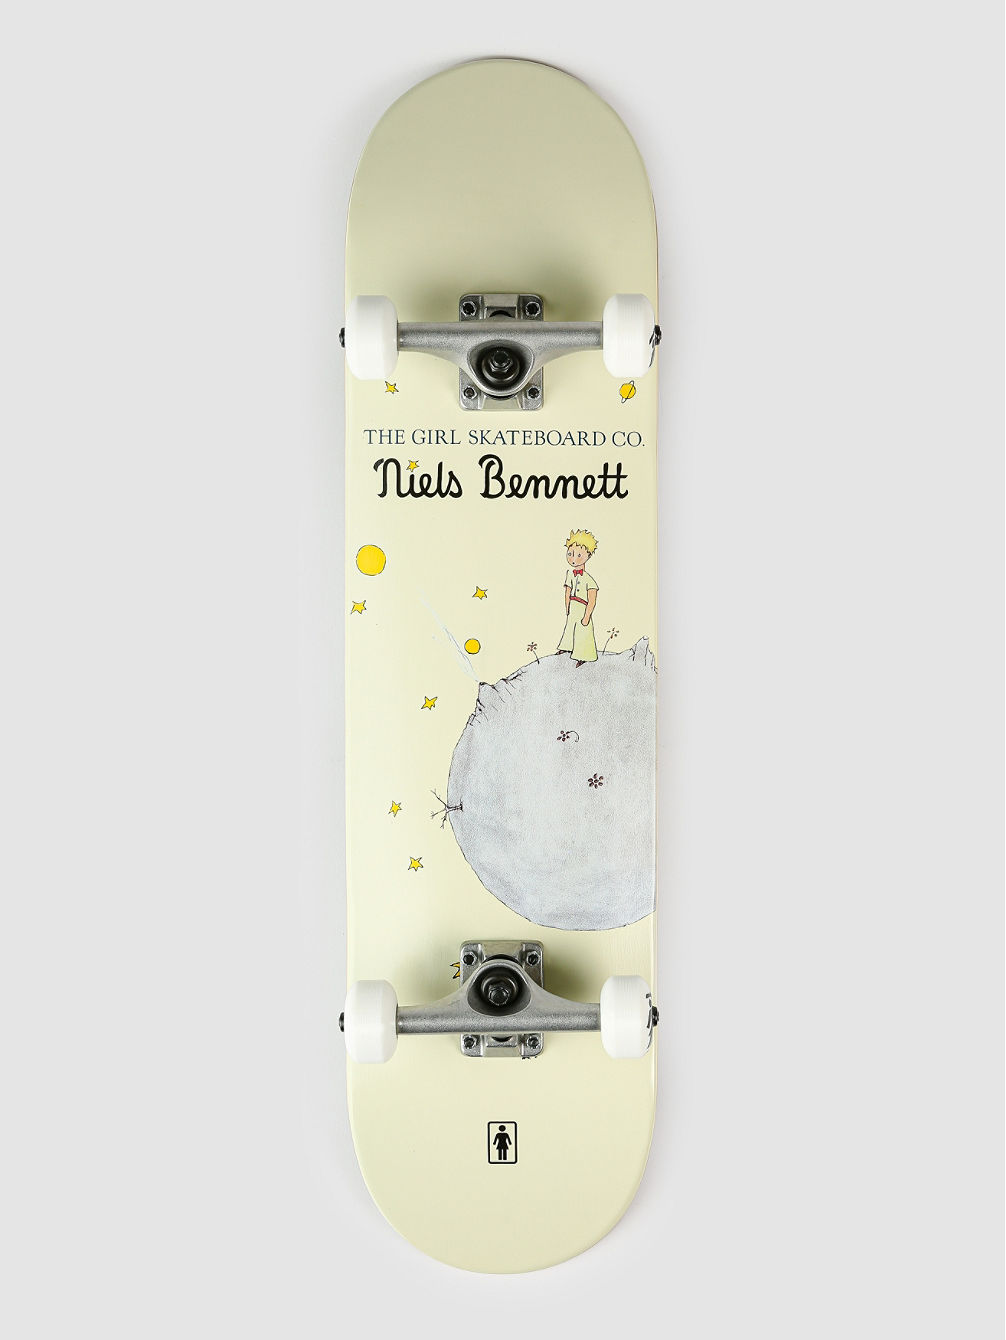 Bennett Little Prince 8.0&amp;#034; Skateboard Completo